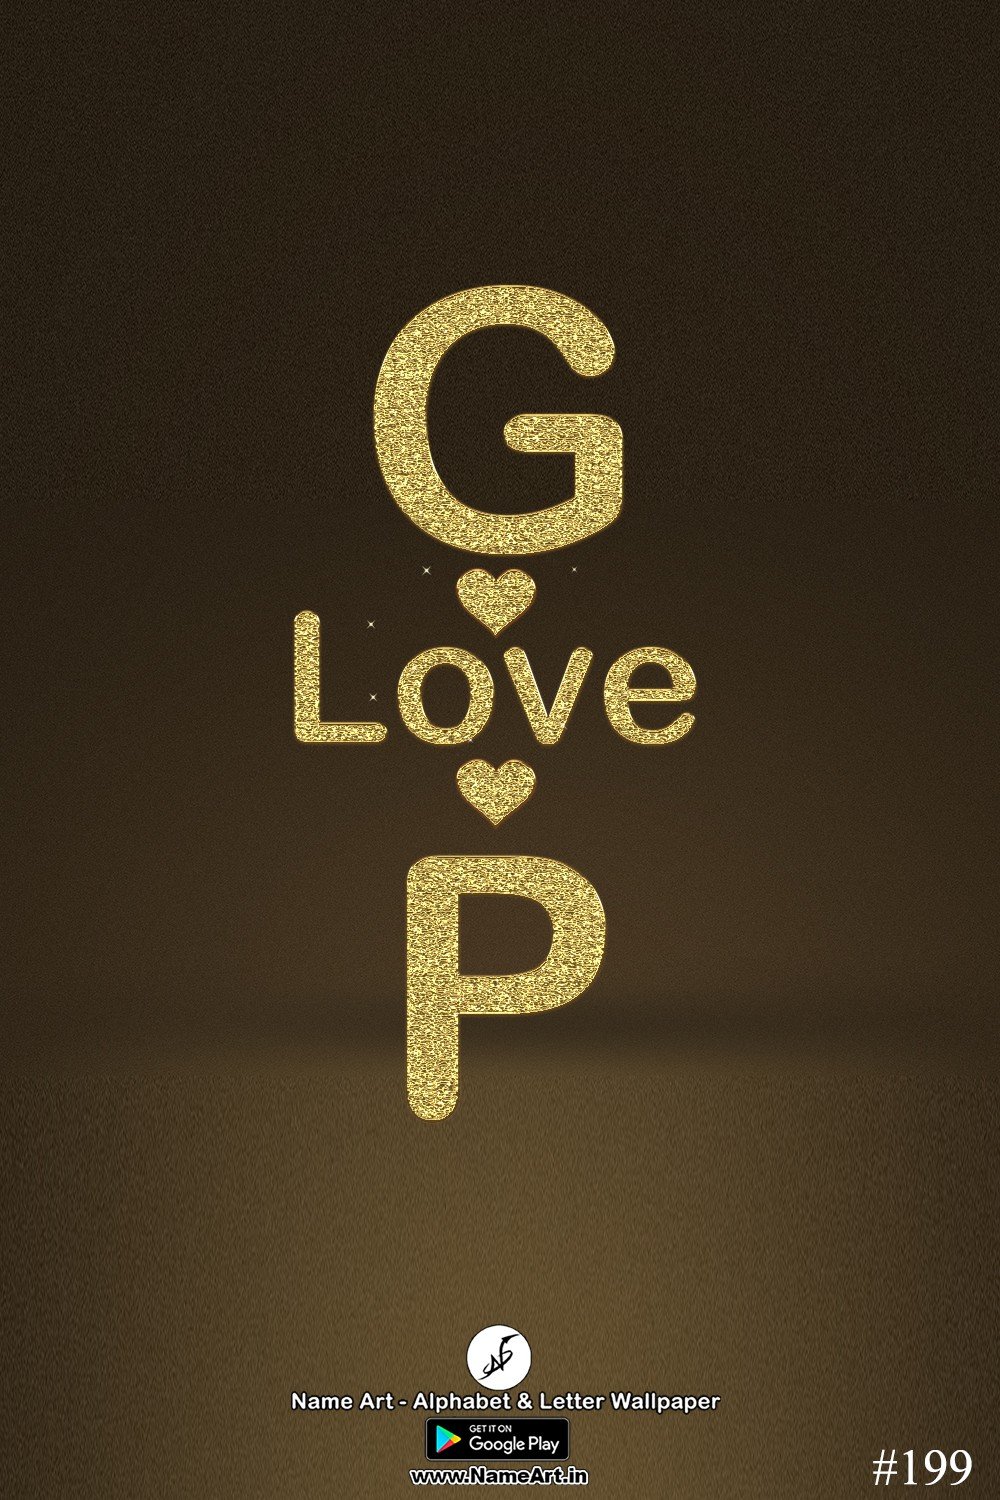 GP | Whatsapp Status DP GP | GP Golden Love Status Cute Couple Whatsapp Status DP !! | New Whatsapp Status DP GP Images |